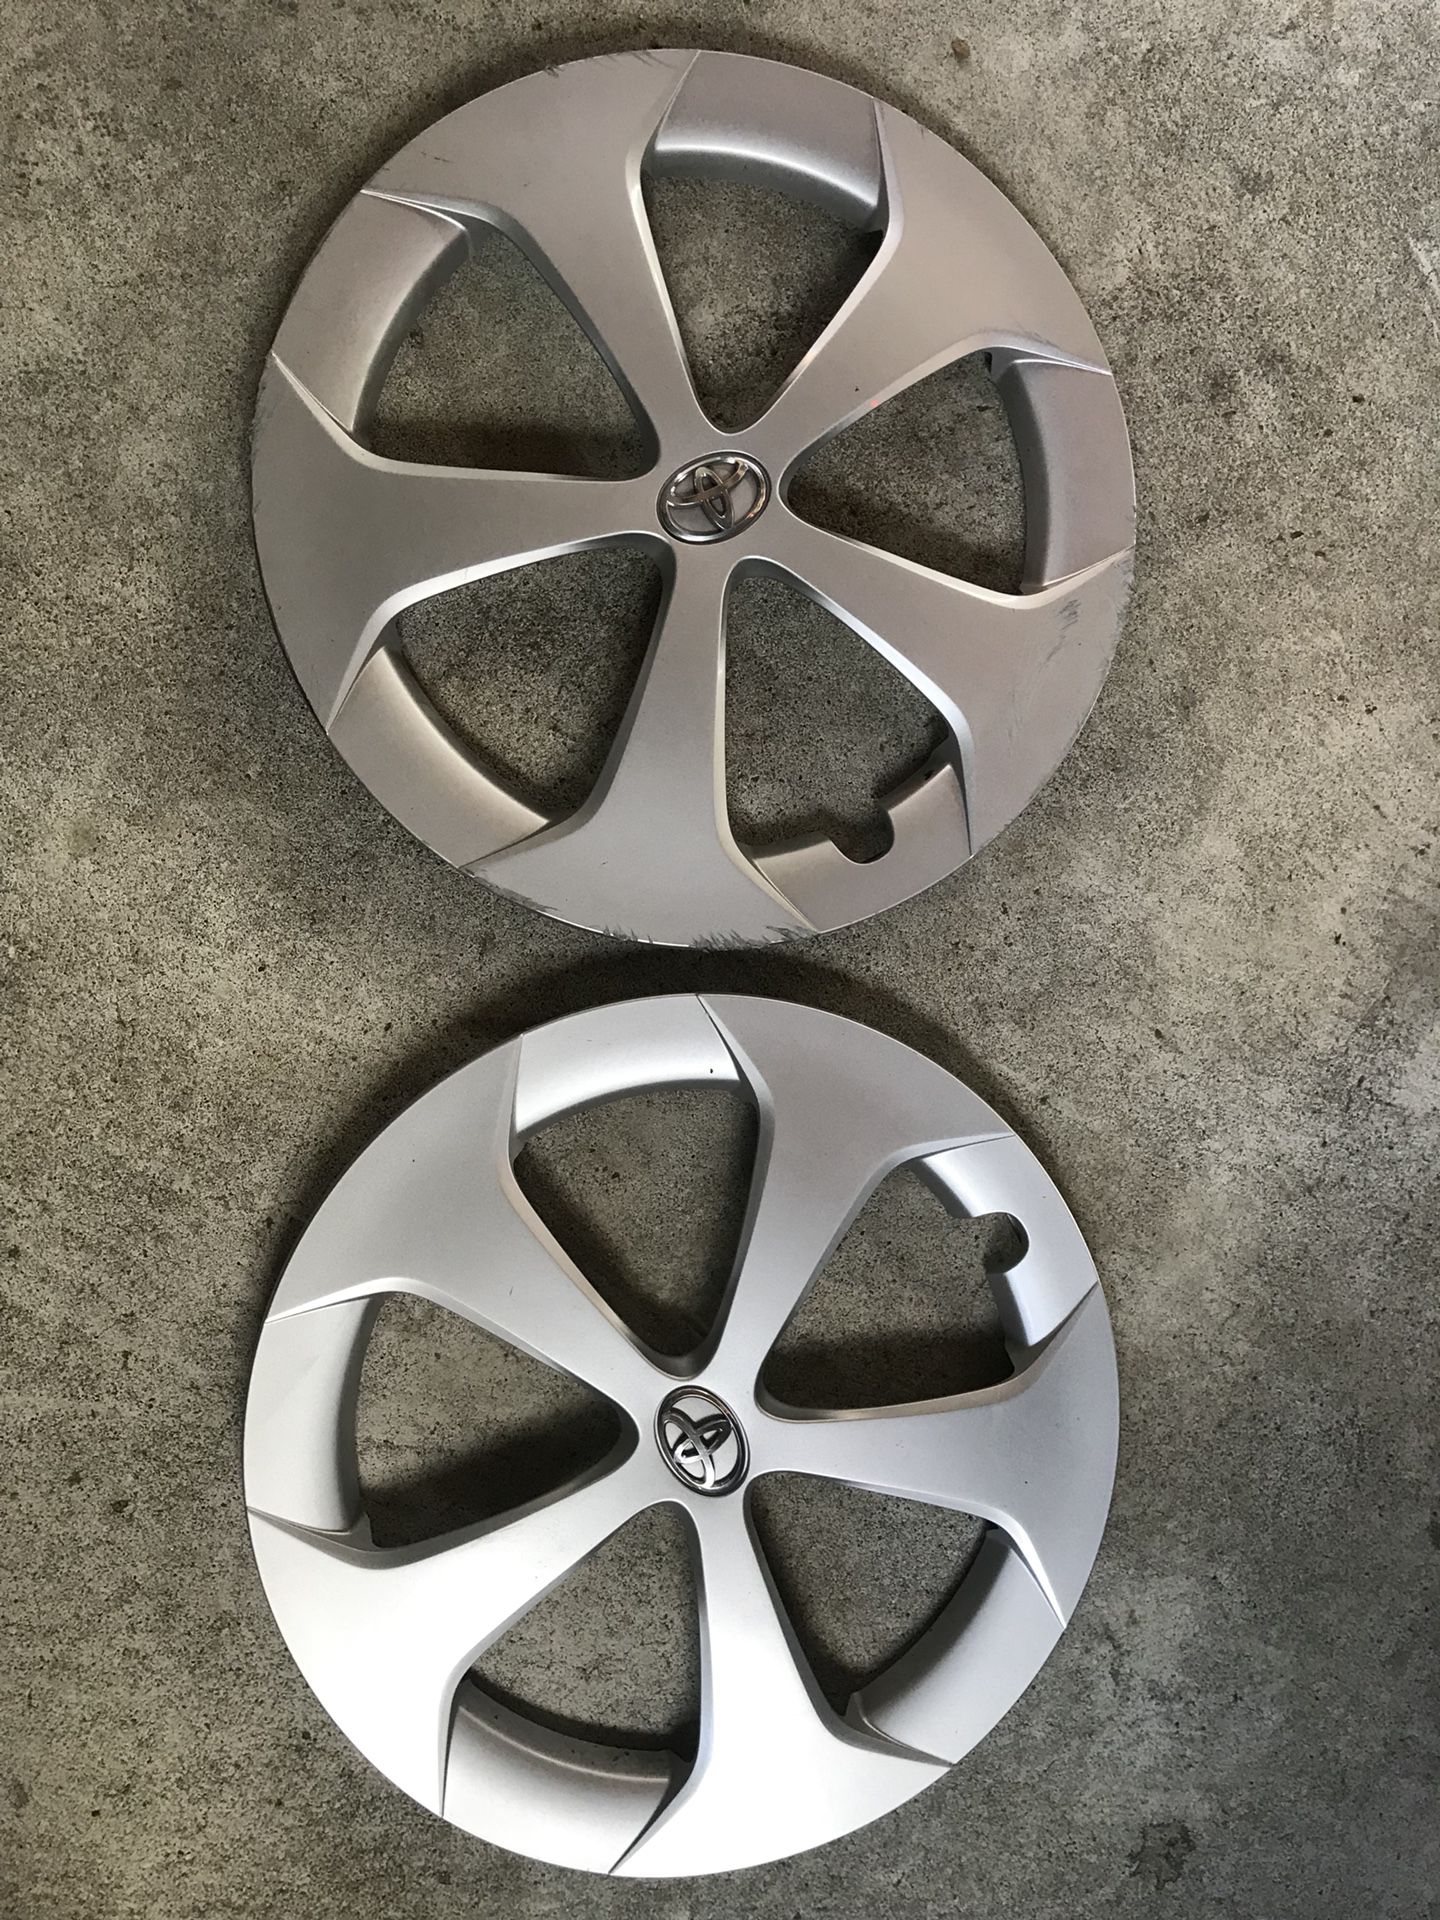 Pair of 2013 Prius hubcaps